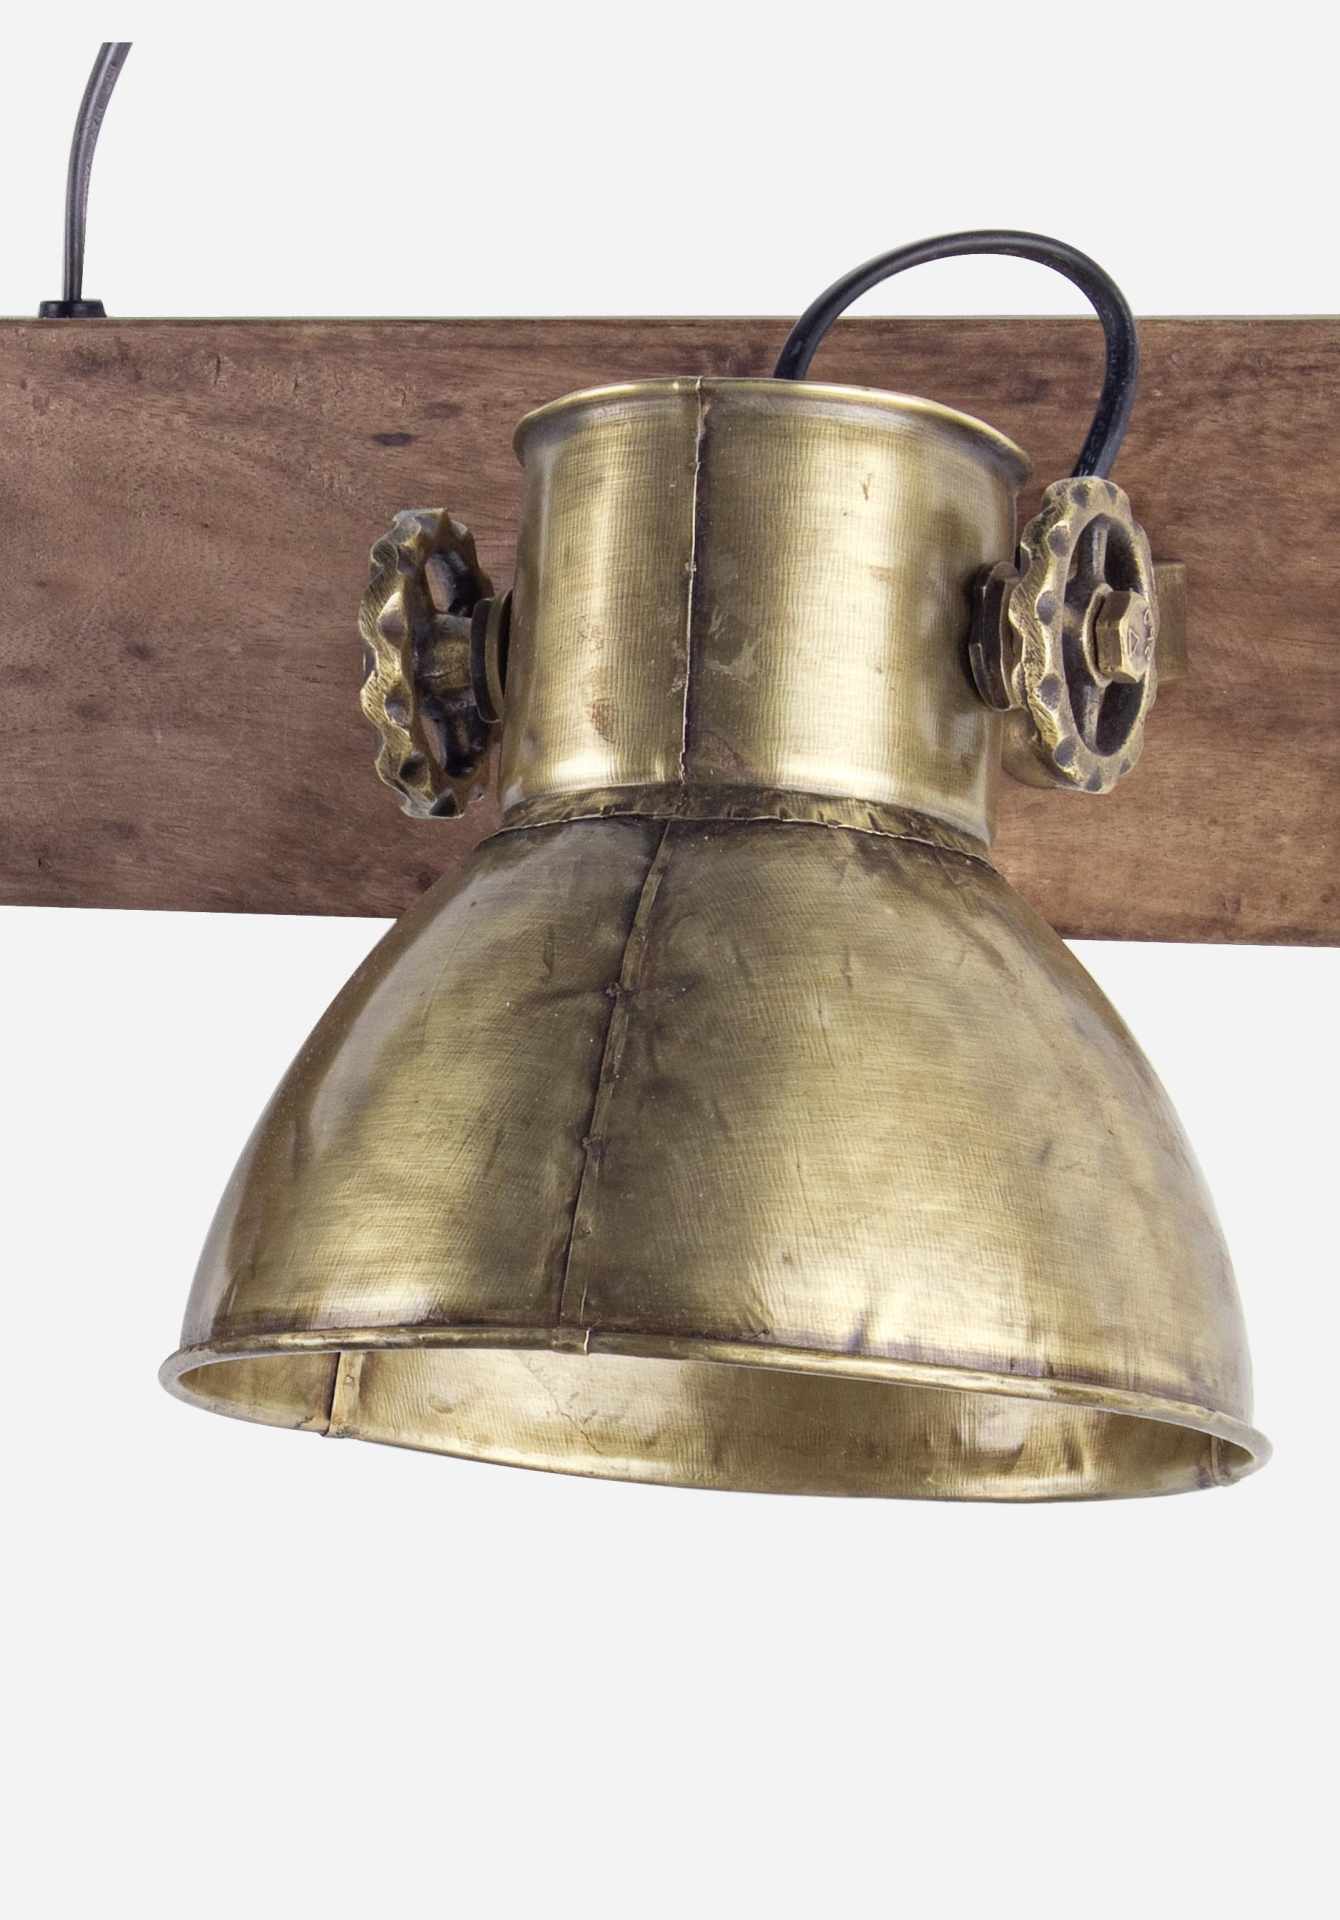 Die Wandleuchte Allique überzeugt mit ihrem klassischen Design. Gefertigt wurde sie aus Mangoholz, welches einen natürlichen Farbton besitzt. Der Lampenschirm ist aus Metall und hat eine goldene Farbe. Die Lampe besitzt eine Höhe von 27 cm.